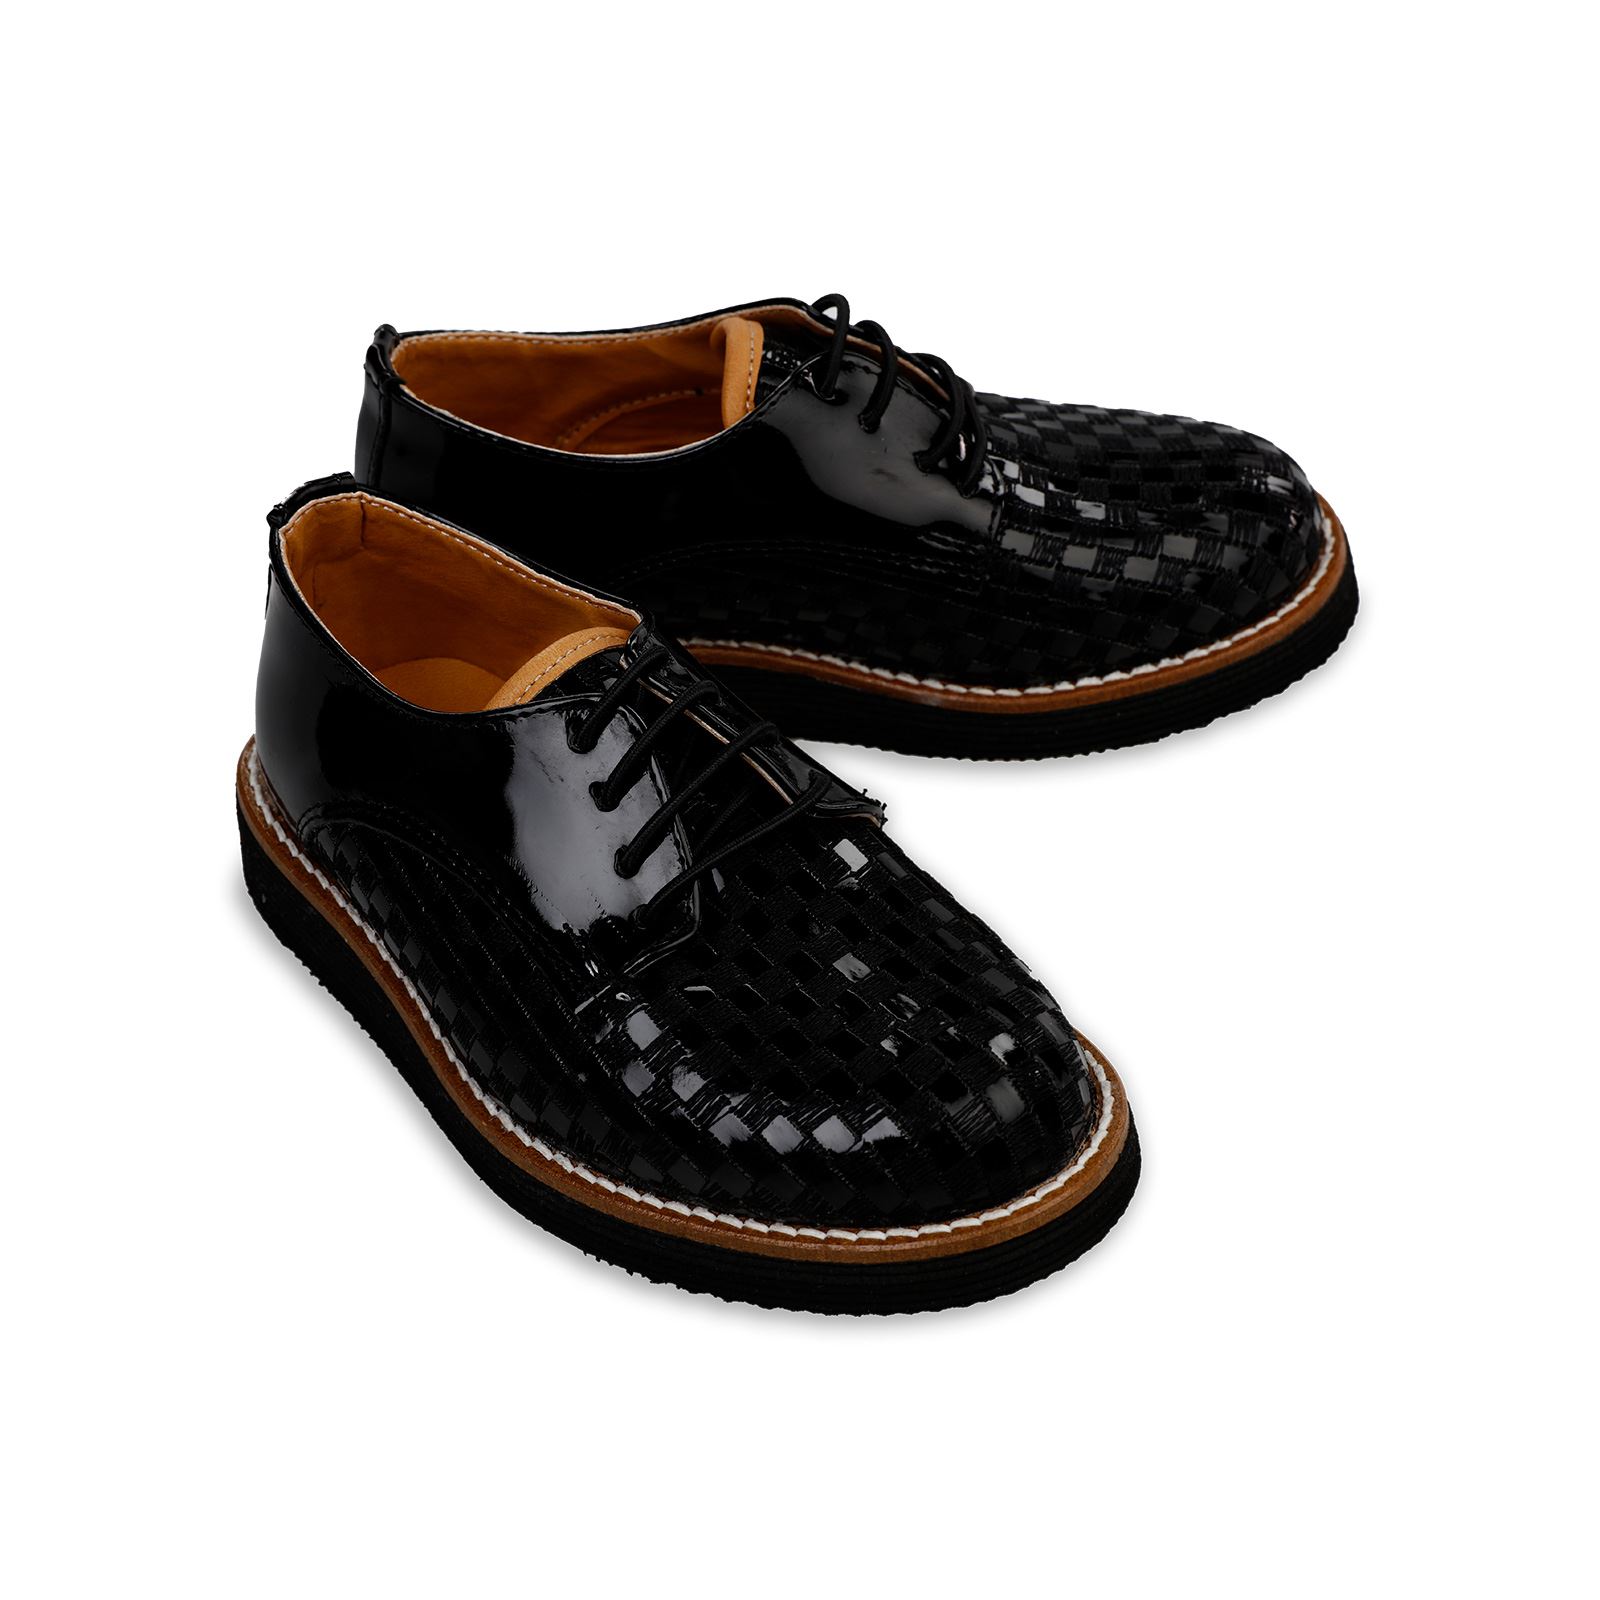 Harli Erkek Çocuk Klasik Ayakkabı 36-40 Numara Siyah